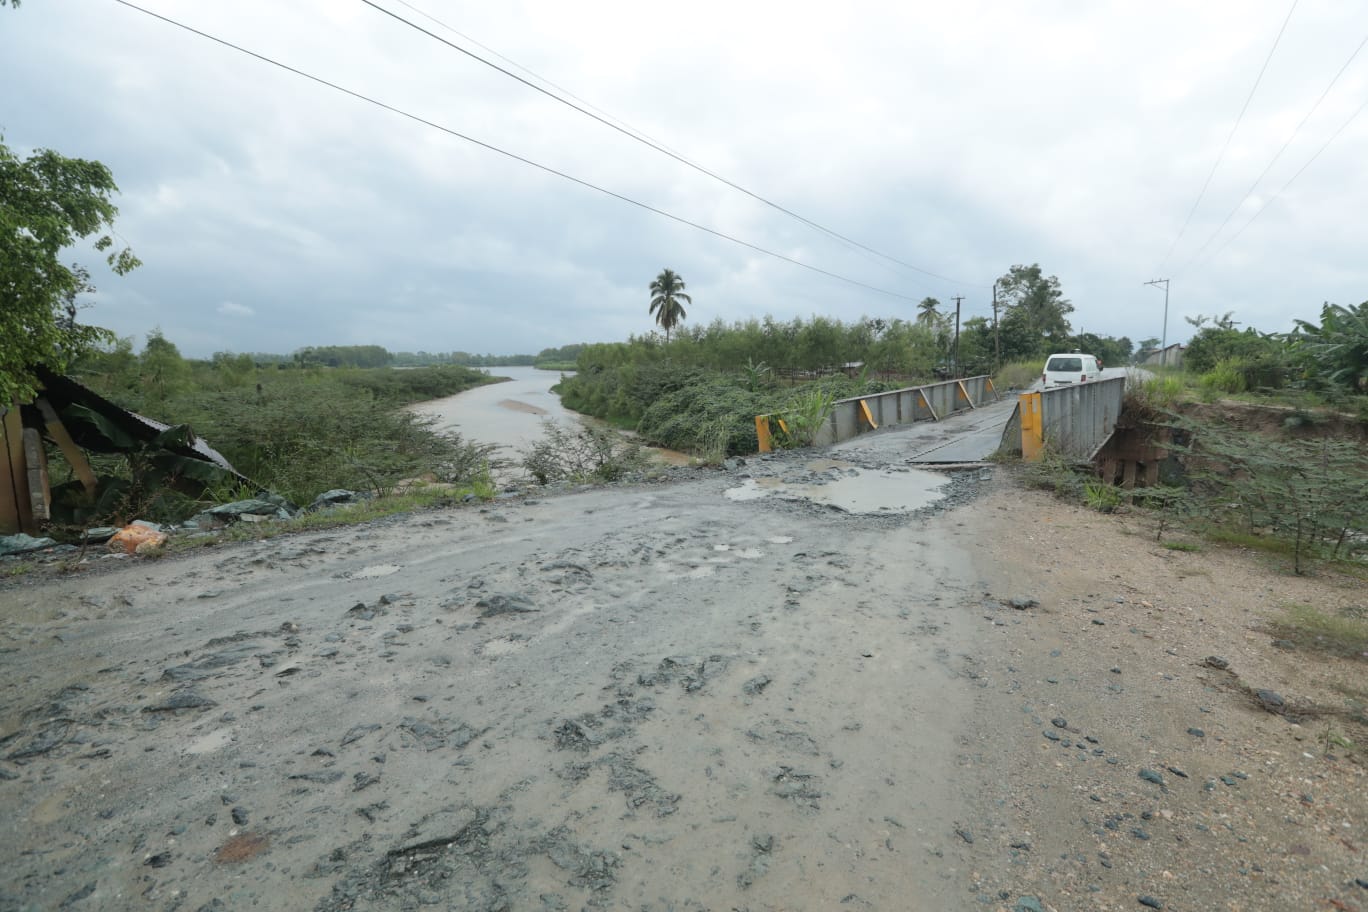 Los daños en la infraestructura causados por Eta e Iota en varios departamentos del país, como el puente Bobos, en Izabal, aún no han sido reparados. (Foto Prensa Libre: María José Bonilla)